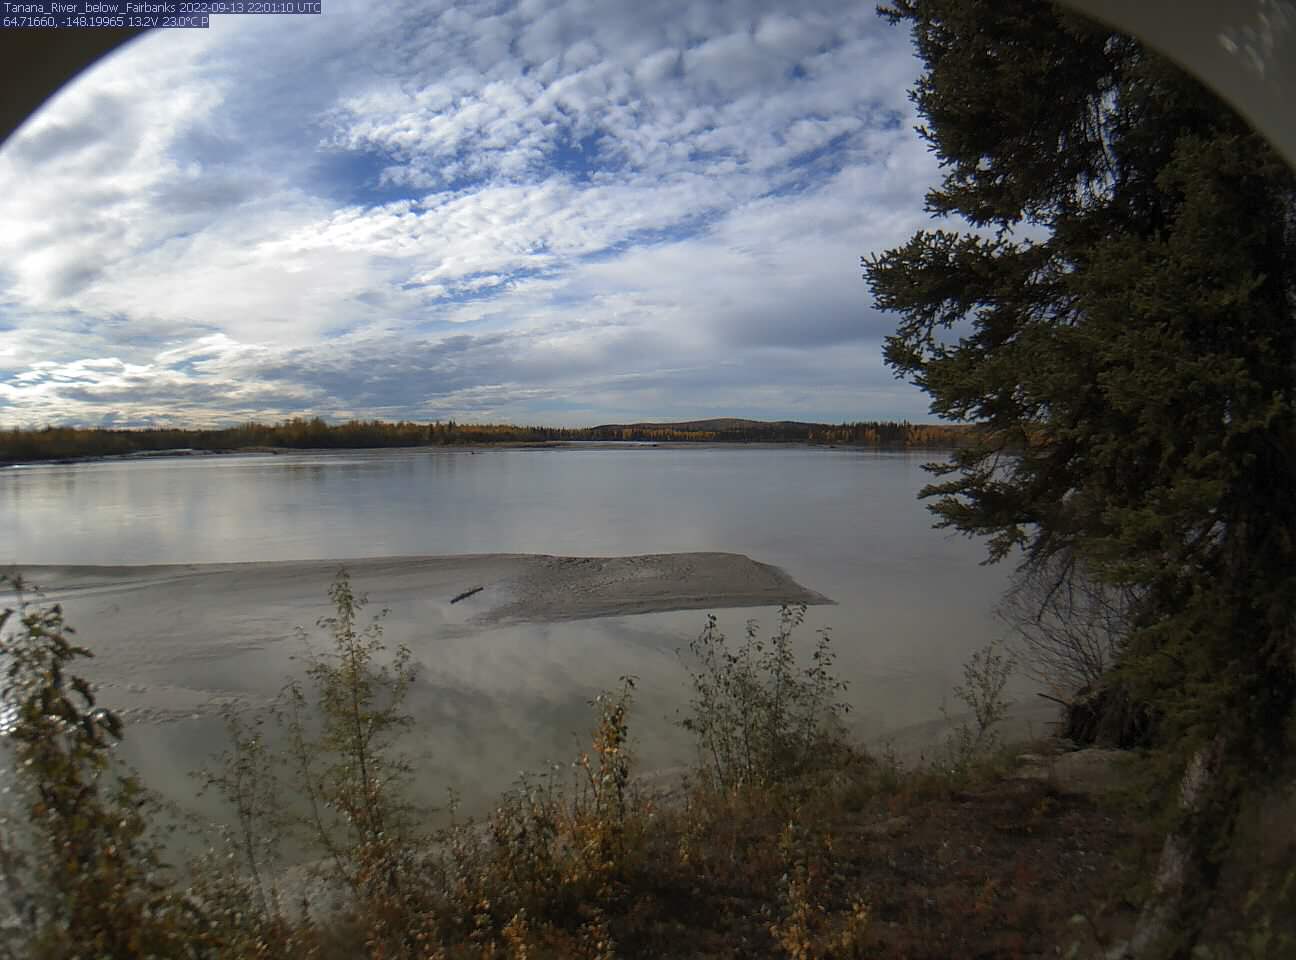 Tanana_River_below_Fairbanks_20220913220111.jpg